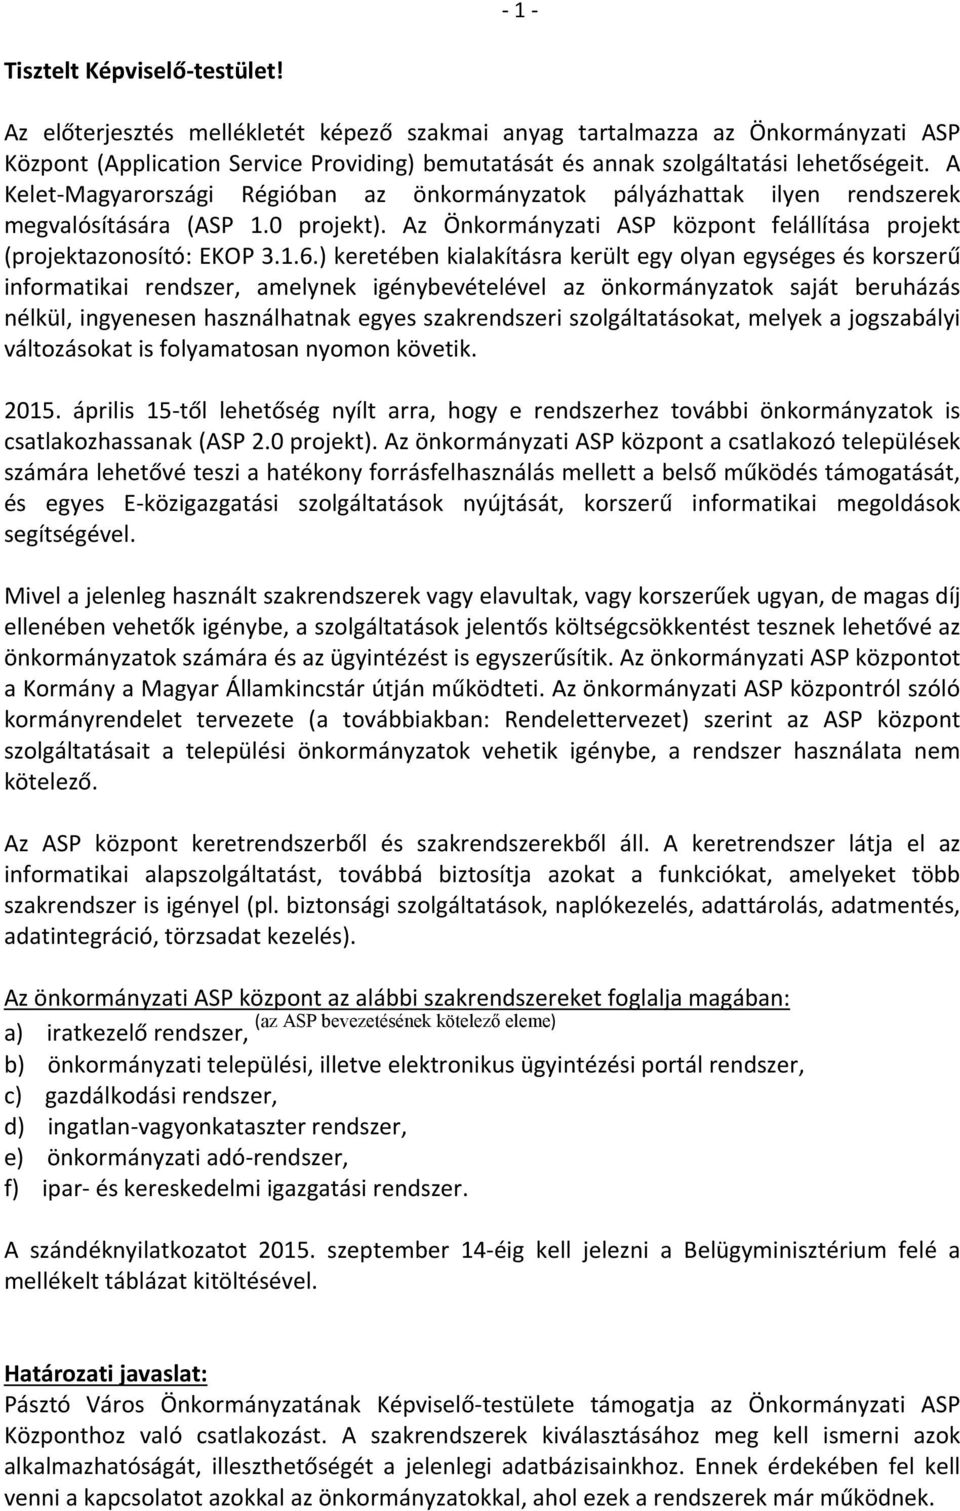 A Kelet-Magyarországi Régióban az önkormányzatok pályázhattak ilyen rendszerek megvalósítására (ASP 1.0 projekt). Az Önkormányzati ASP központ felállítása projekt (projektazonosító: EKOP 3.1.6.